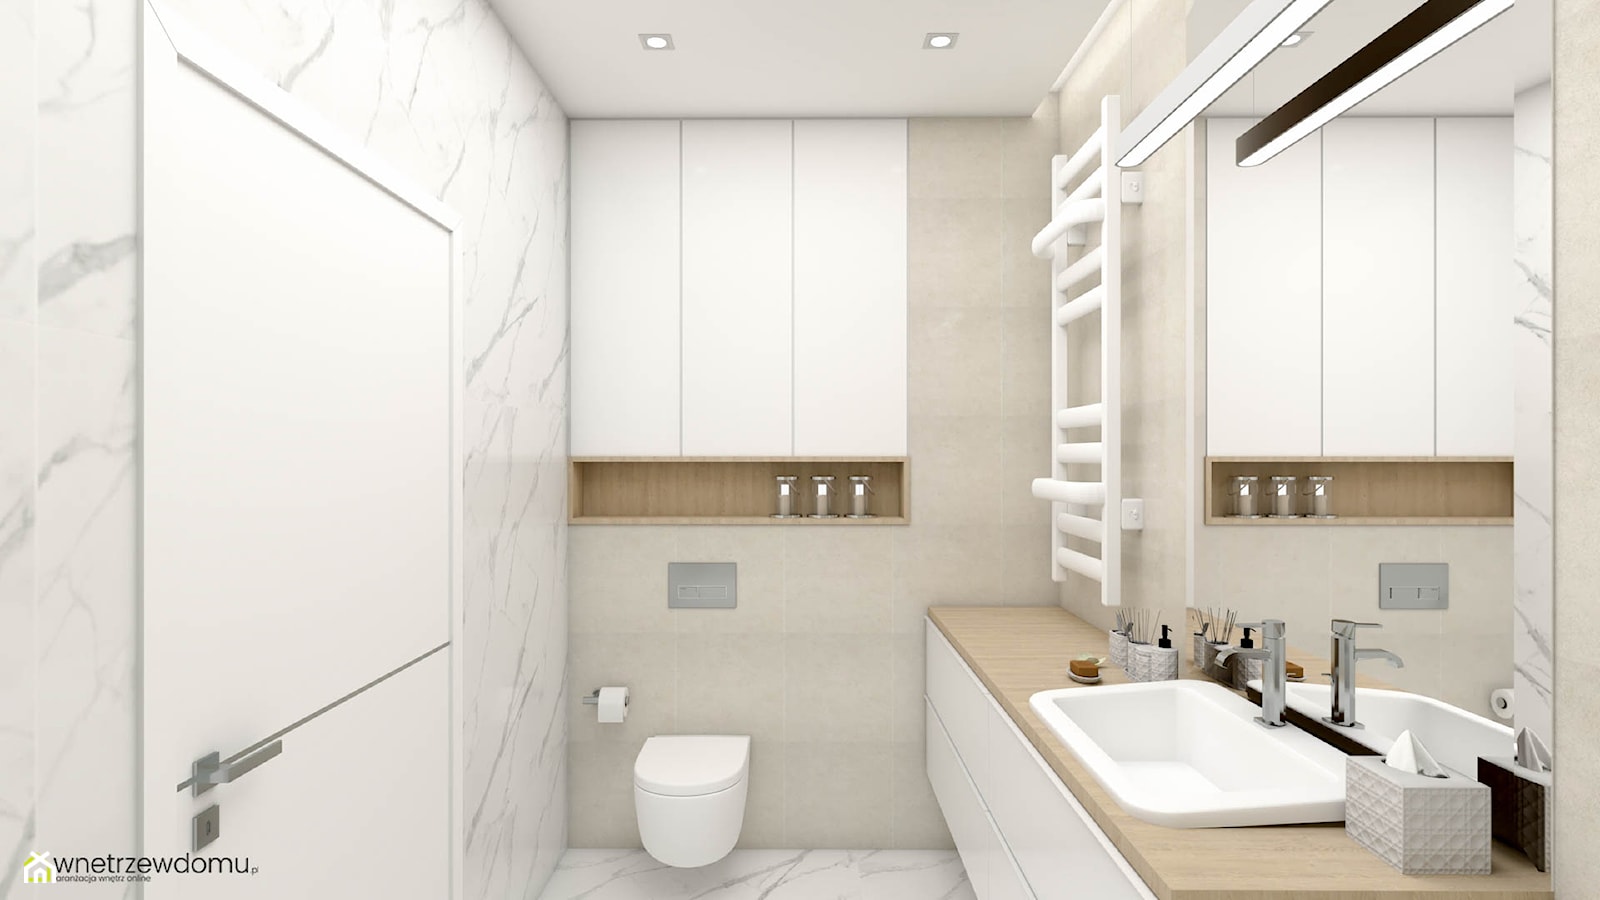 Mała łazienka z białą zabudową - zdjęcie od wnetrzewdomu - Homebook